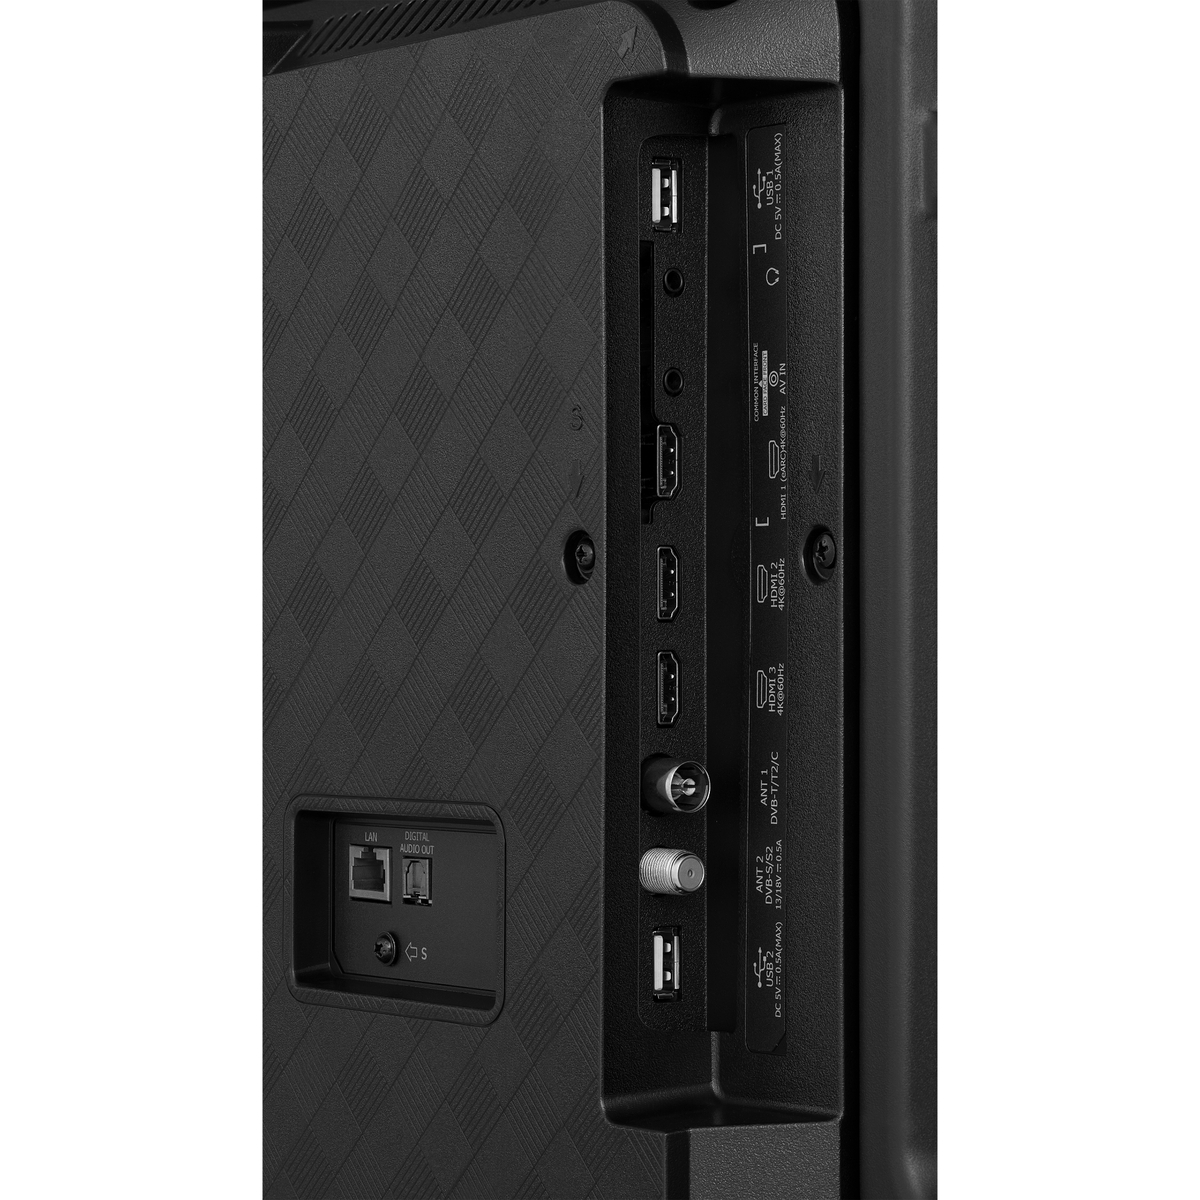 Hisense 58 inches 4K UHD LED Smart TV, Black, 58A62KS